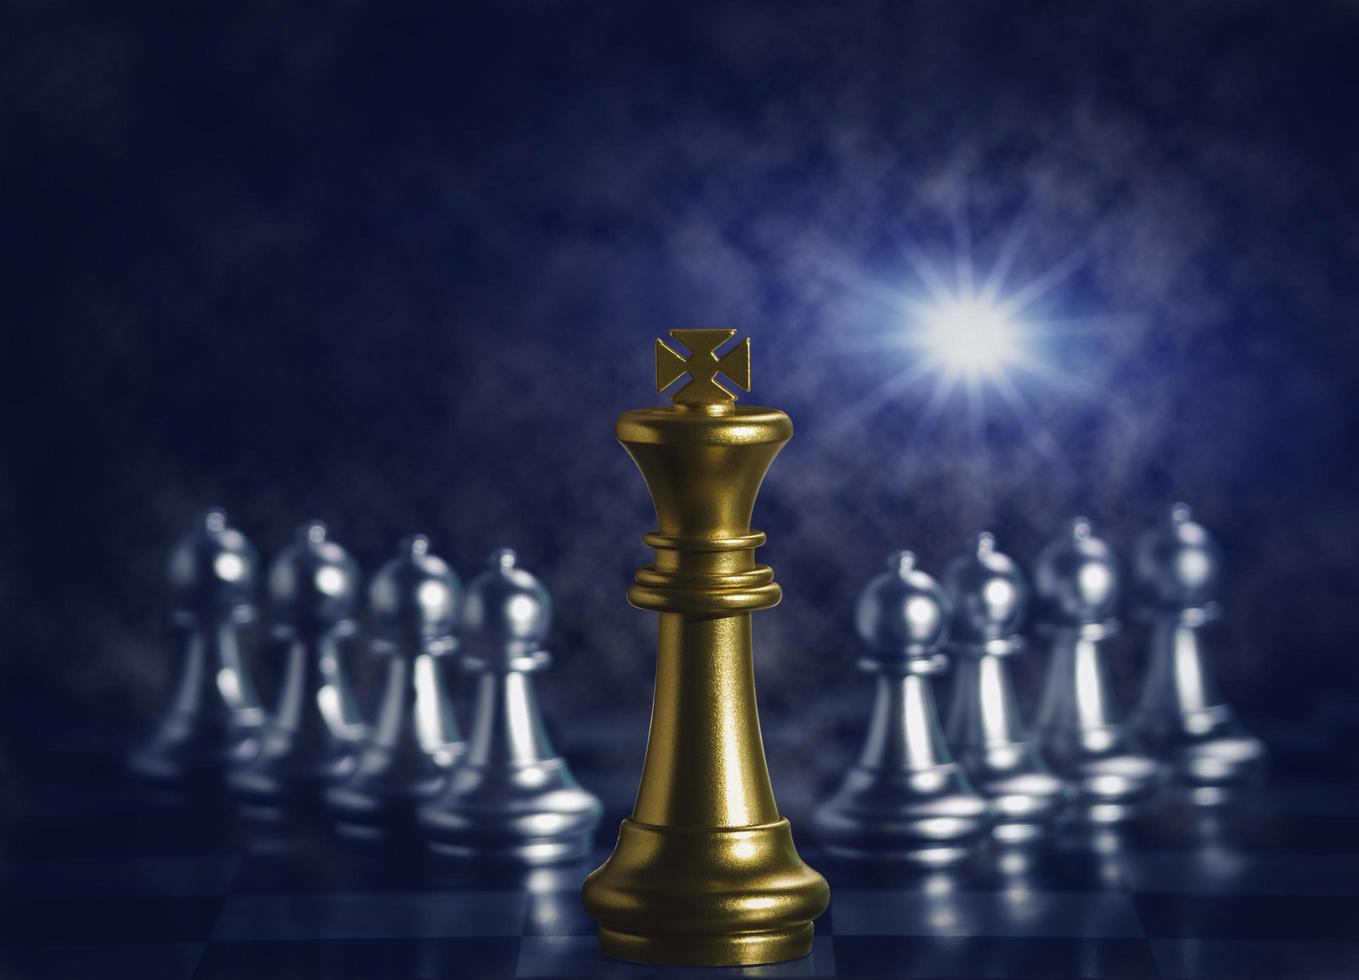 el ajedrez del rey dorado está rodeado de piezas de ajedrez plateadas para luchar con el trabajo en equipo hacia la victoria, el concepto de estrategia empresarial y el concepto de líder y trabajo en equipo para el éxito. foto